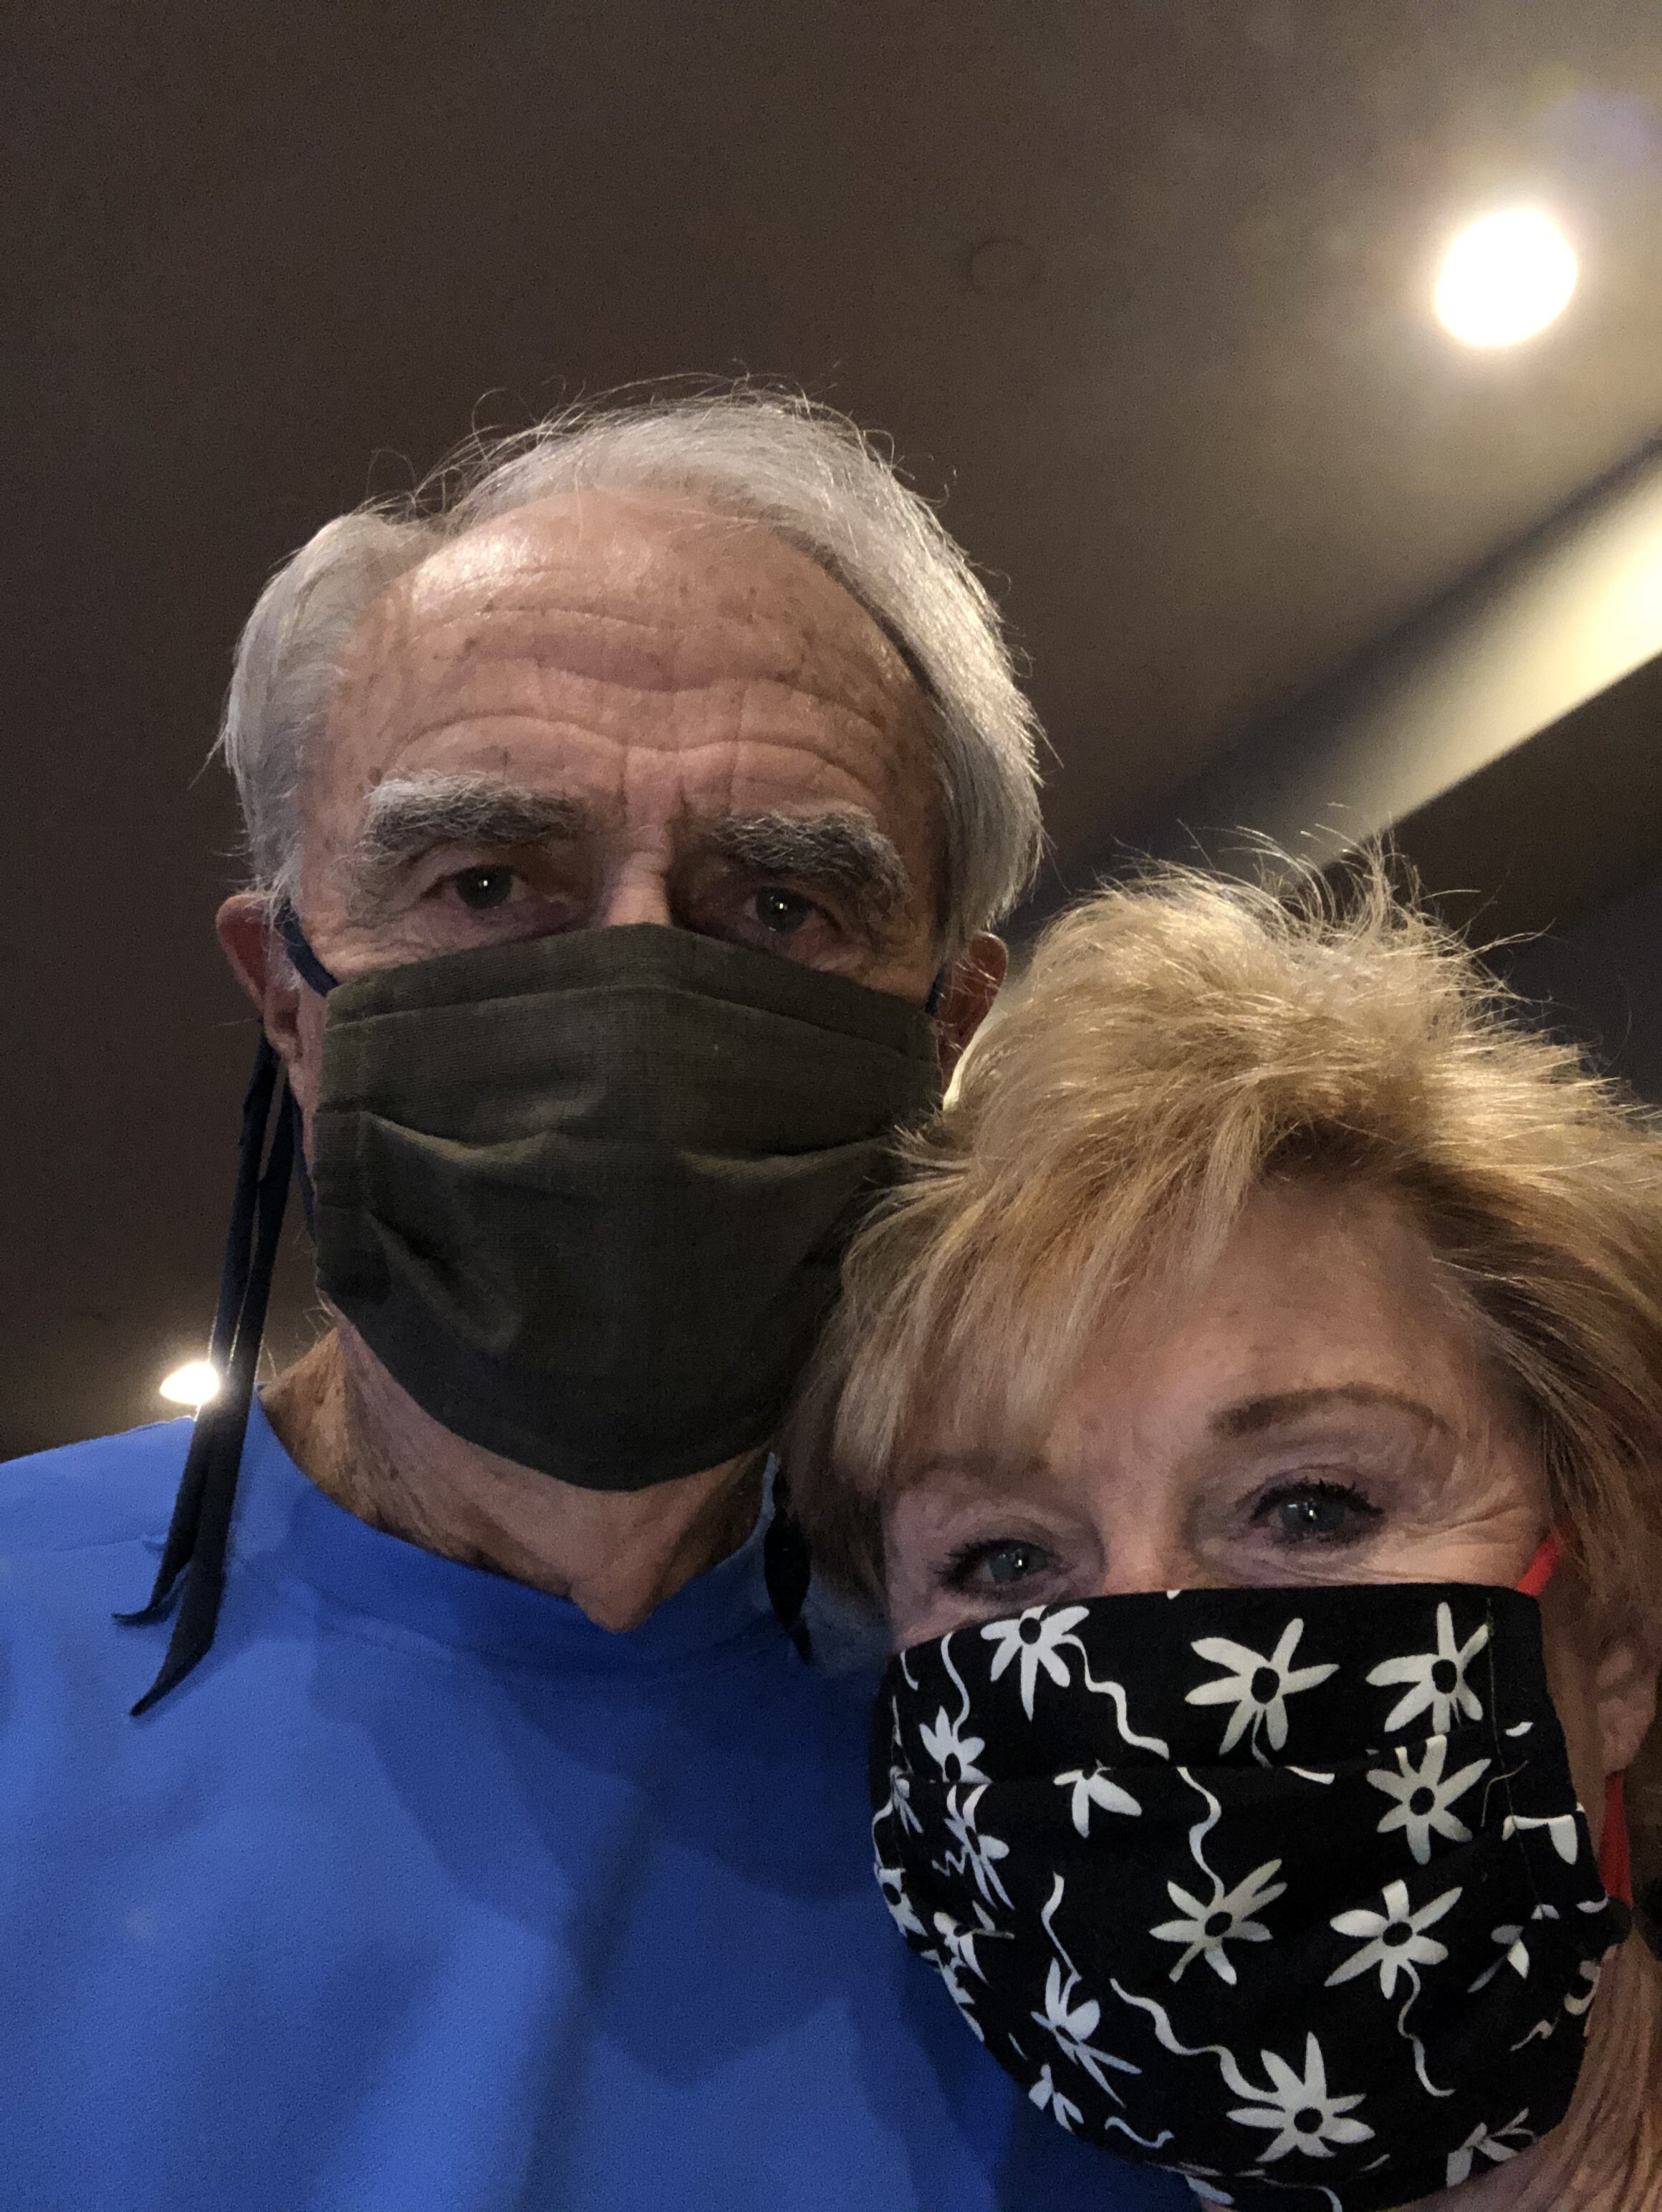 Dad and Mom showing off new halfpeeledbanana masks